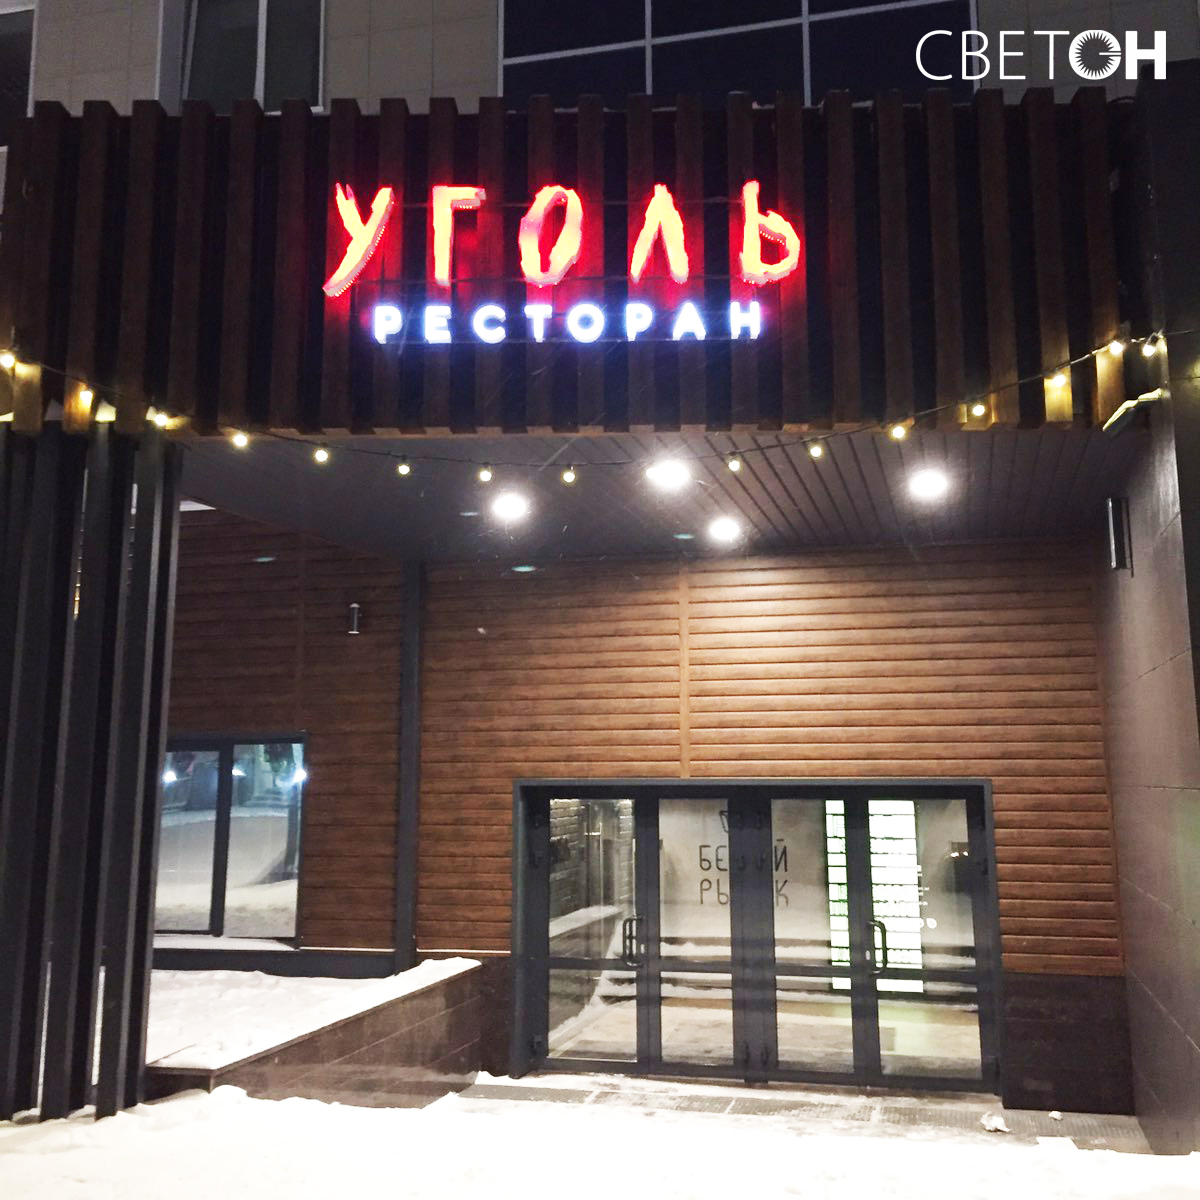 Уголь ресторан Челябинск на белом рынке